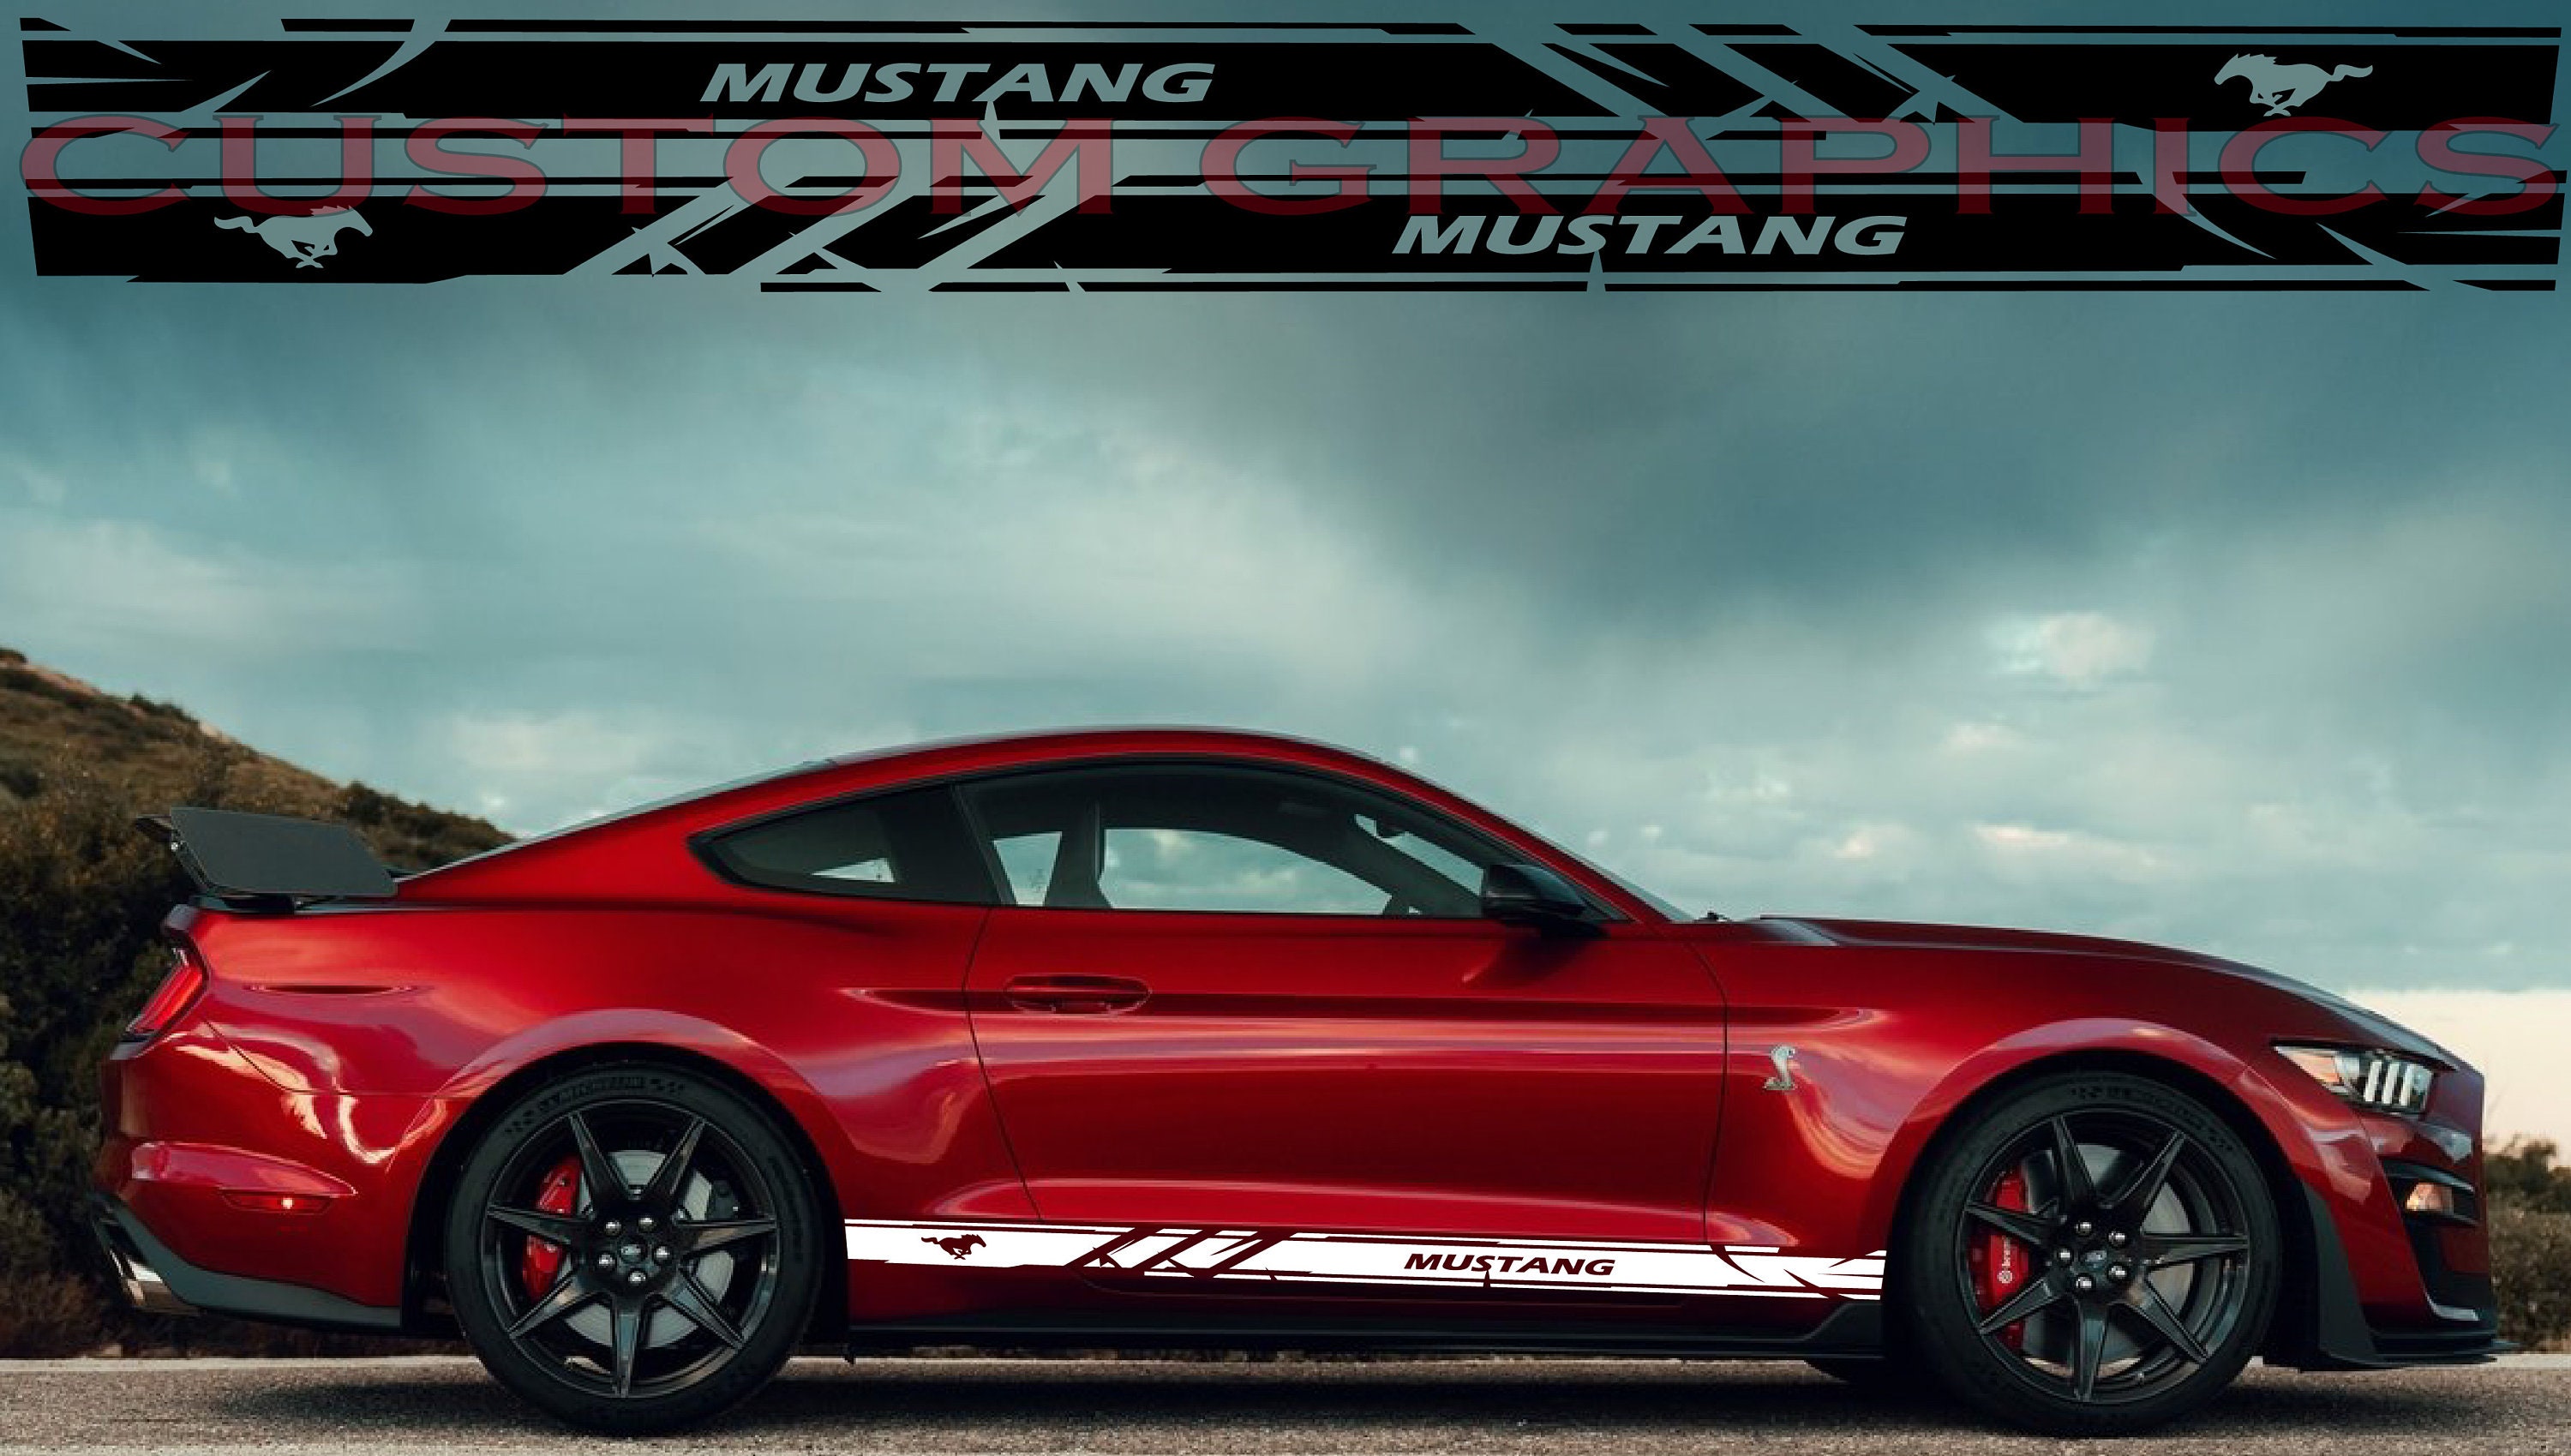 Rennstreifen - Mustang Streifen - Racing Streifen #013 — Autoaufkleber 24 -  carstyling and more